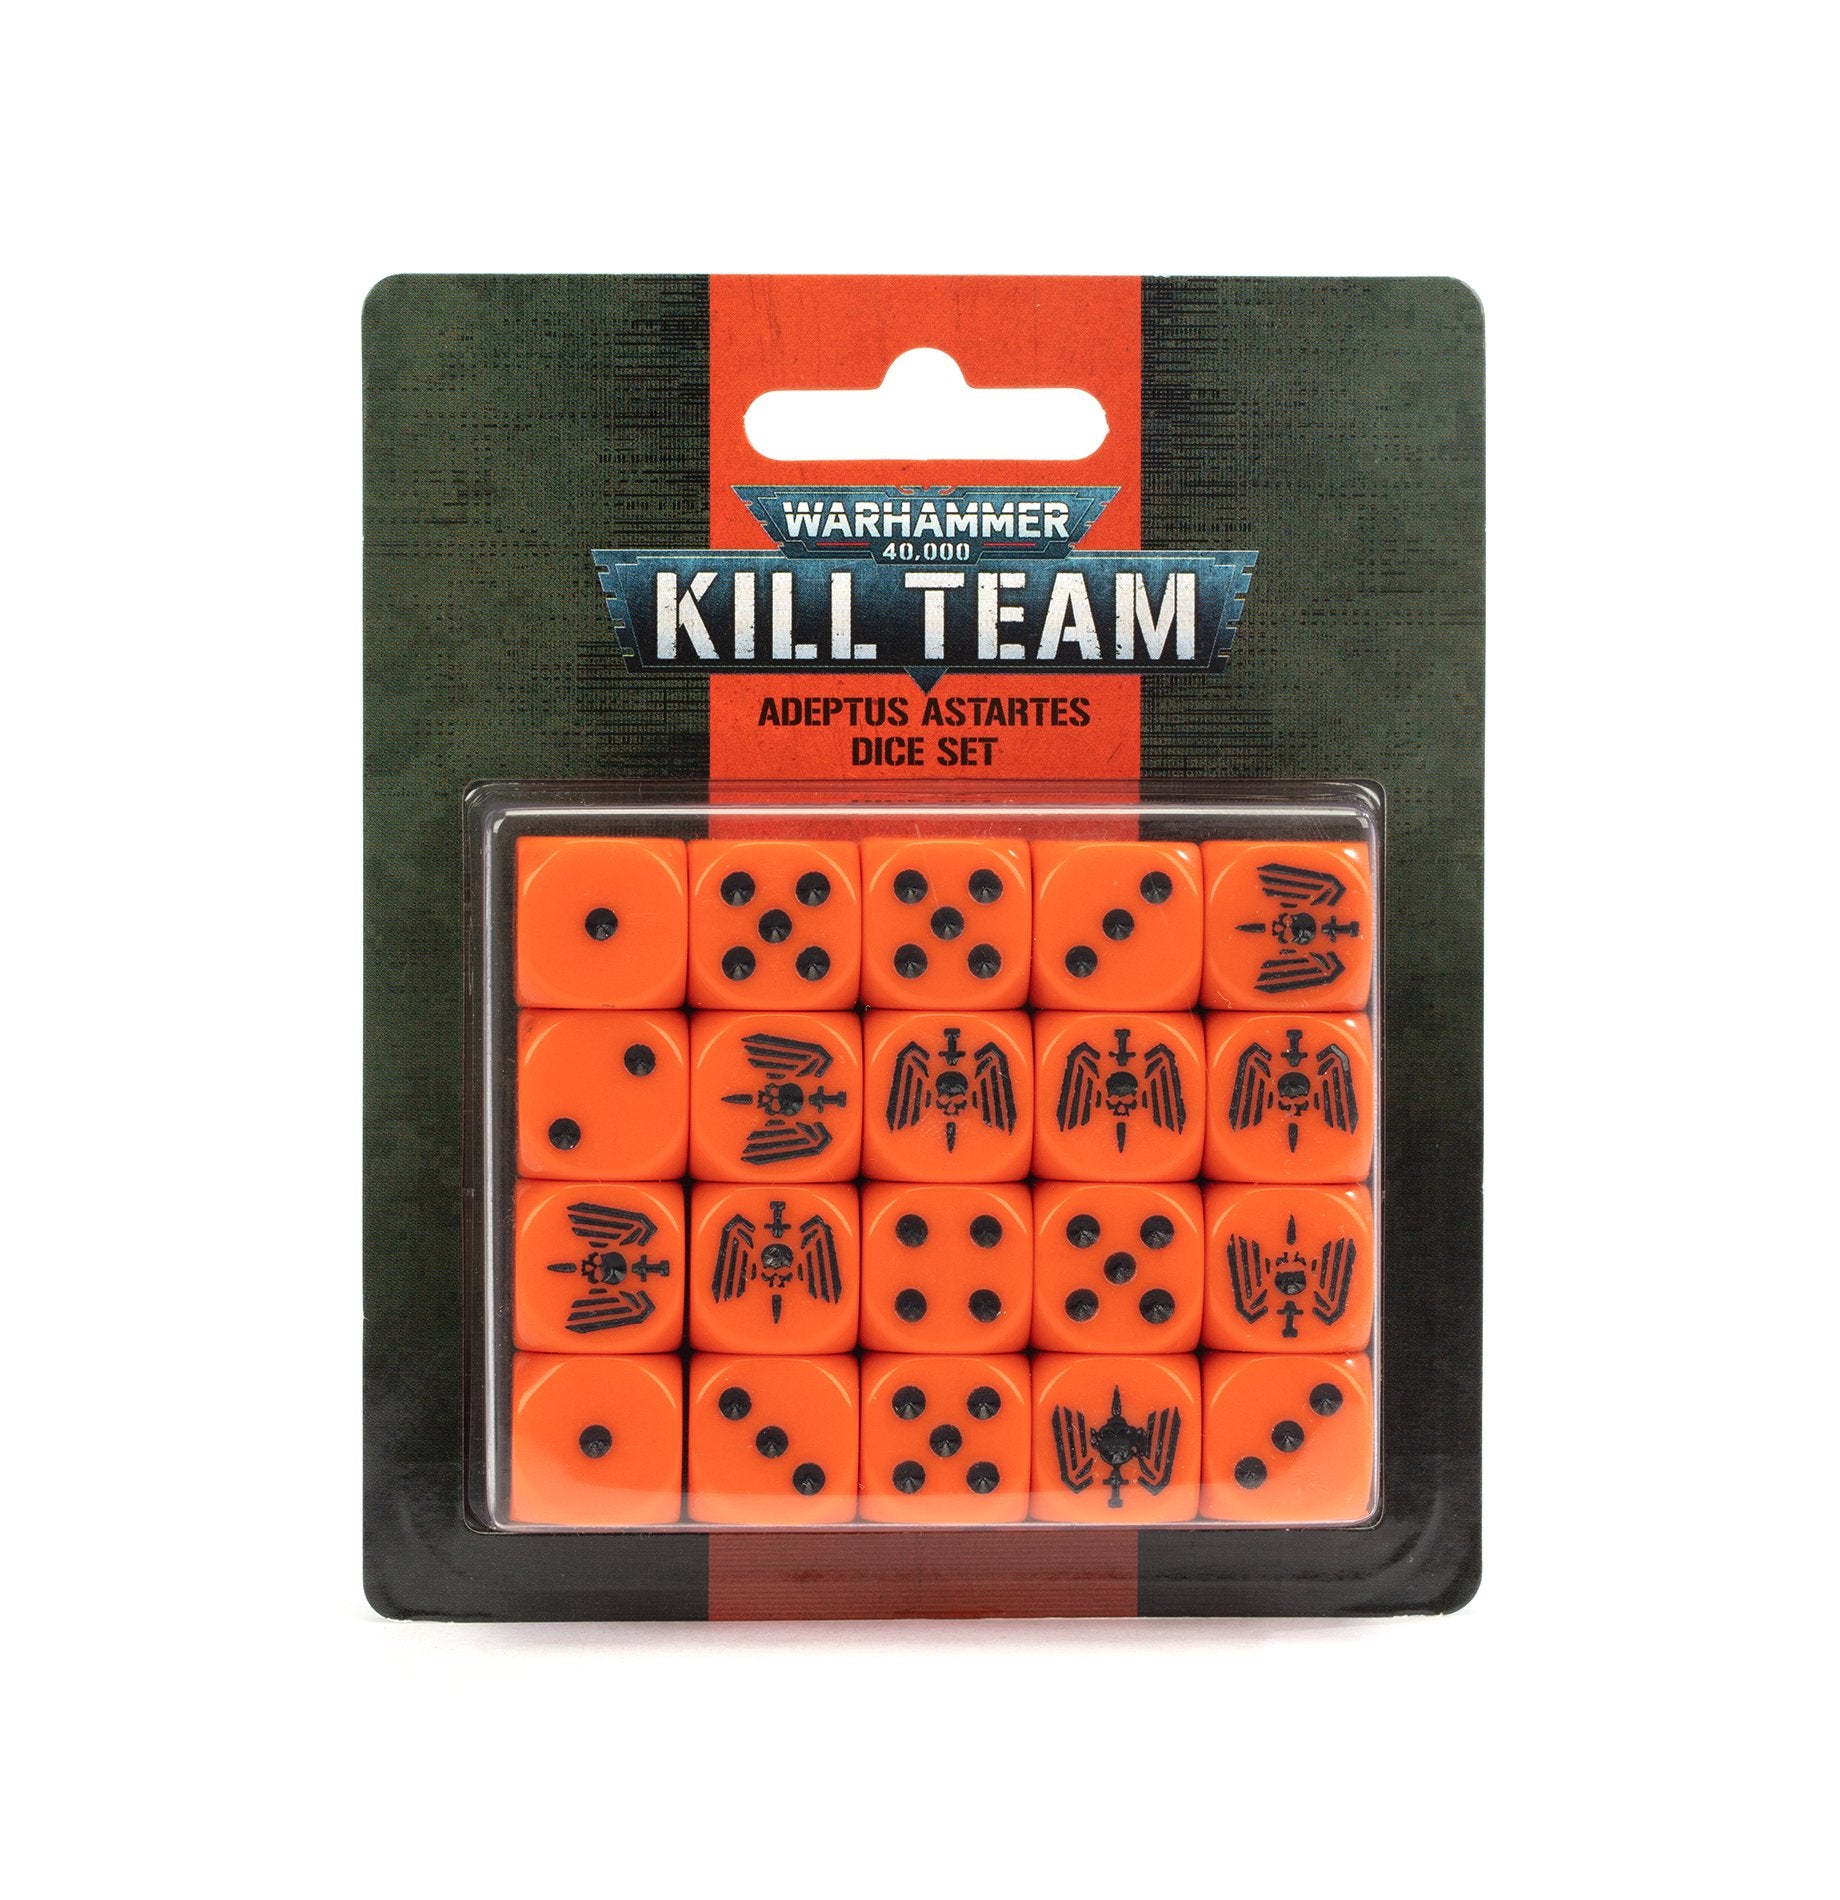 bristol-kill-team-bristolindependentgaming.co.uk